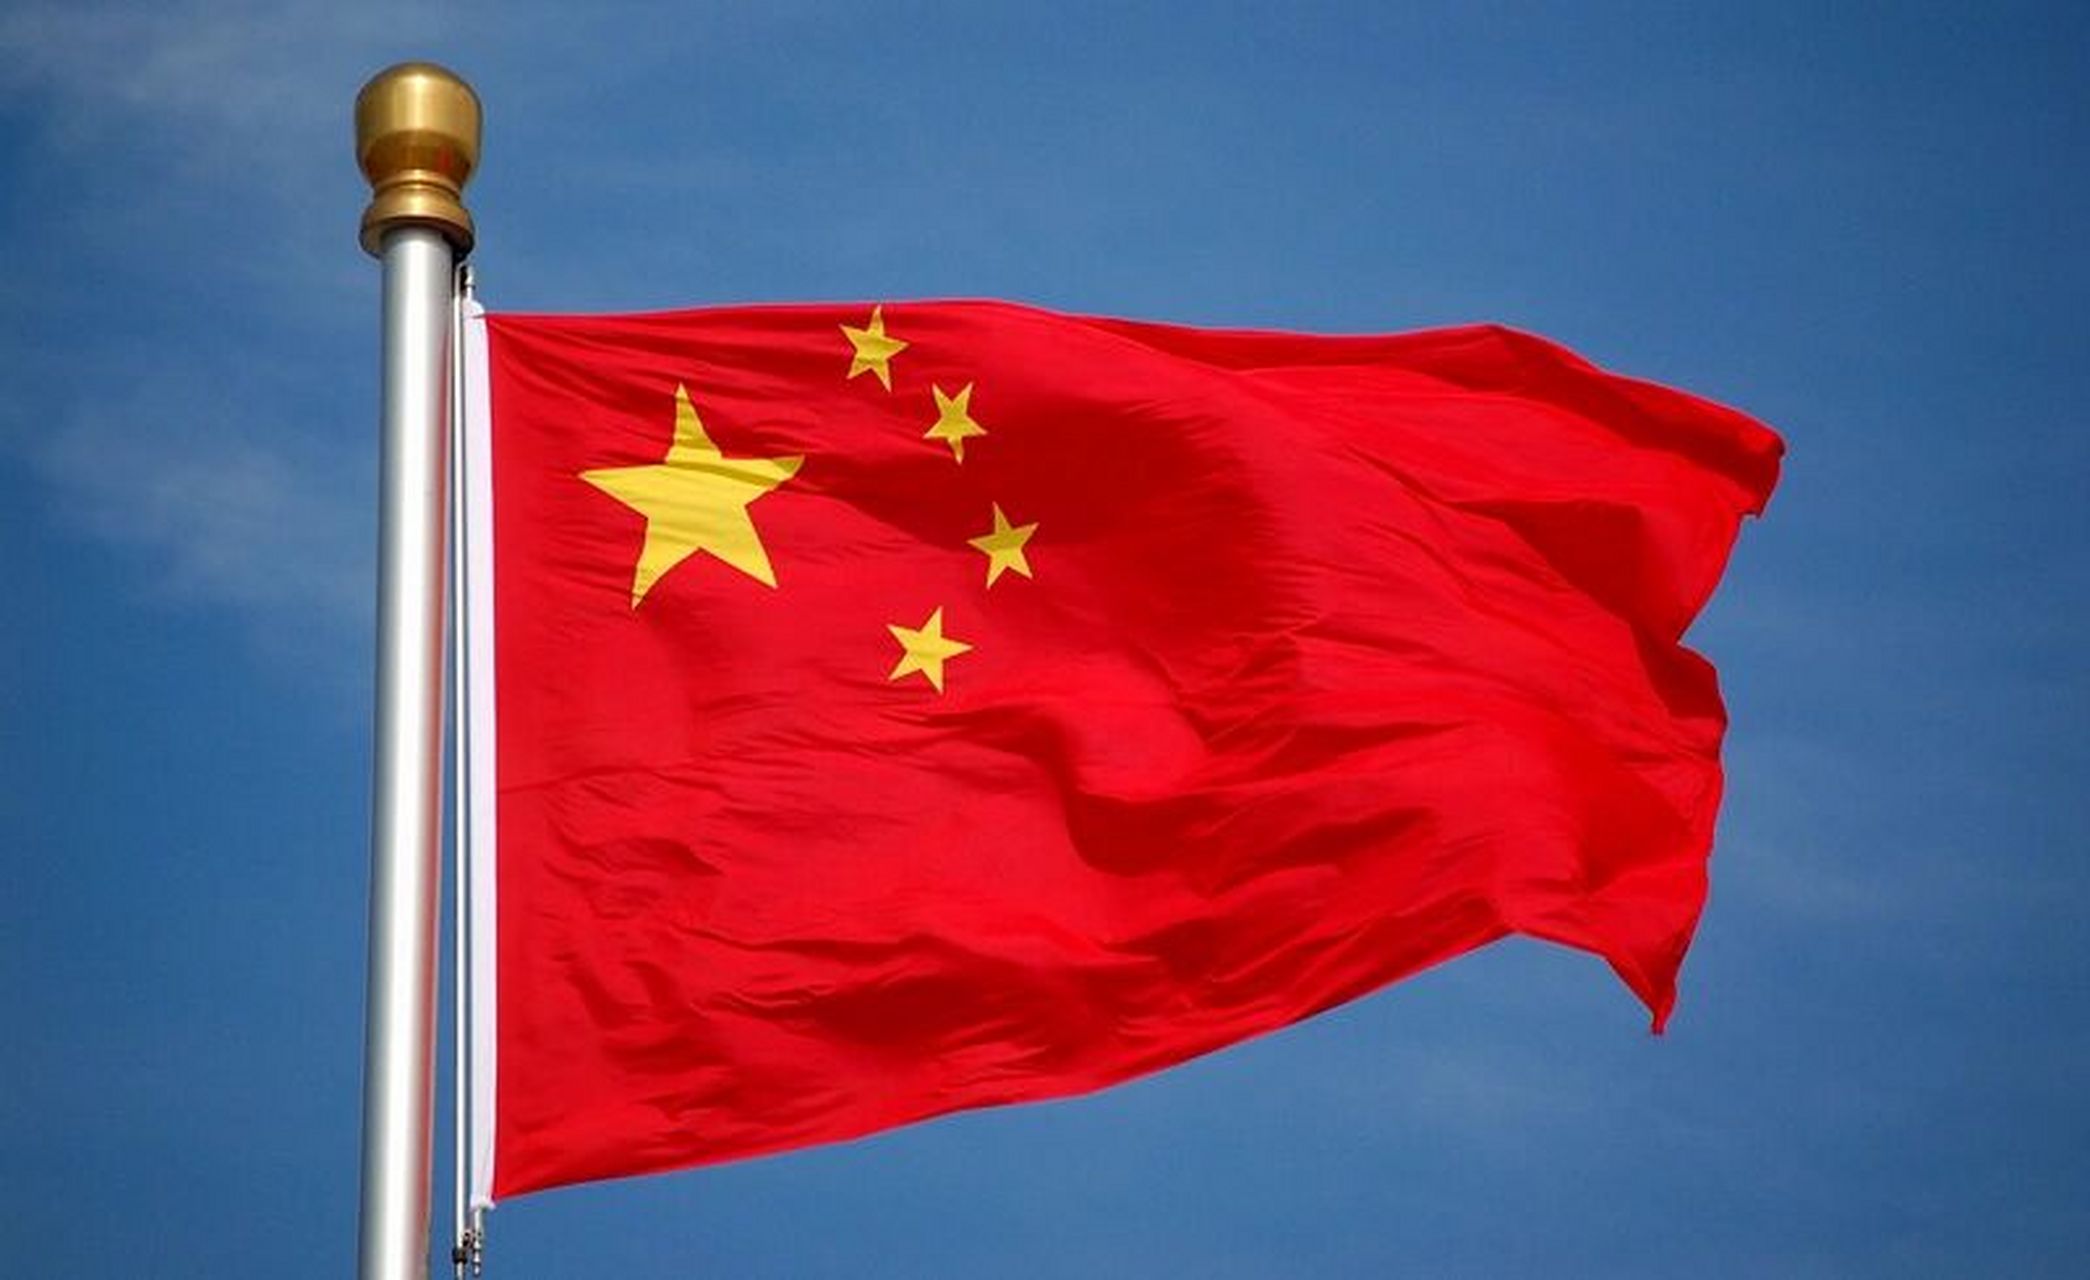 五星红旗迎风飘扬 明天是你的生日 我的中国 六张飘扬的五星红旗 我的